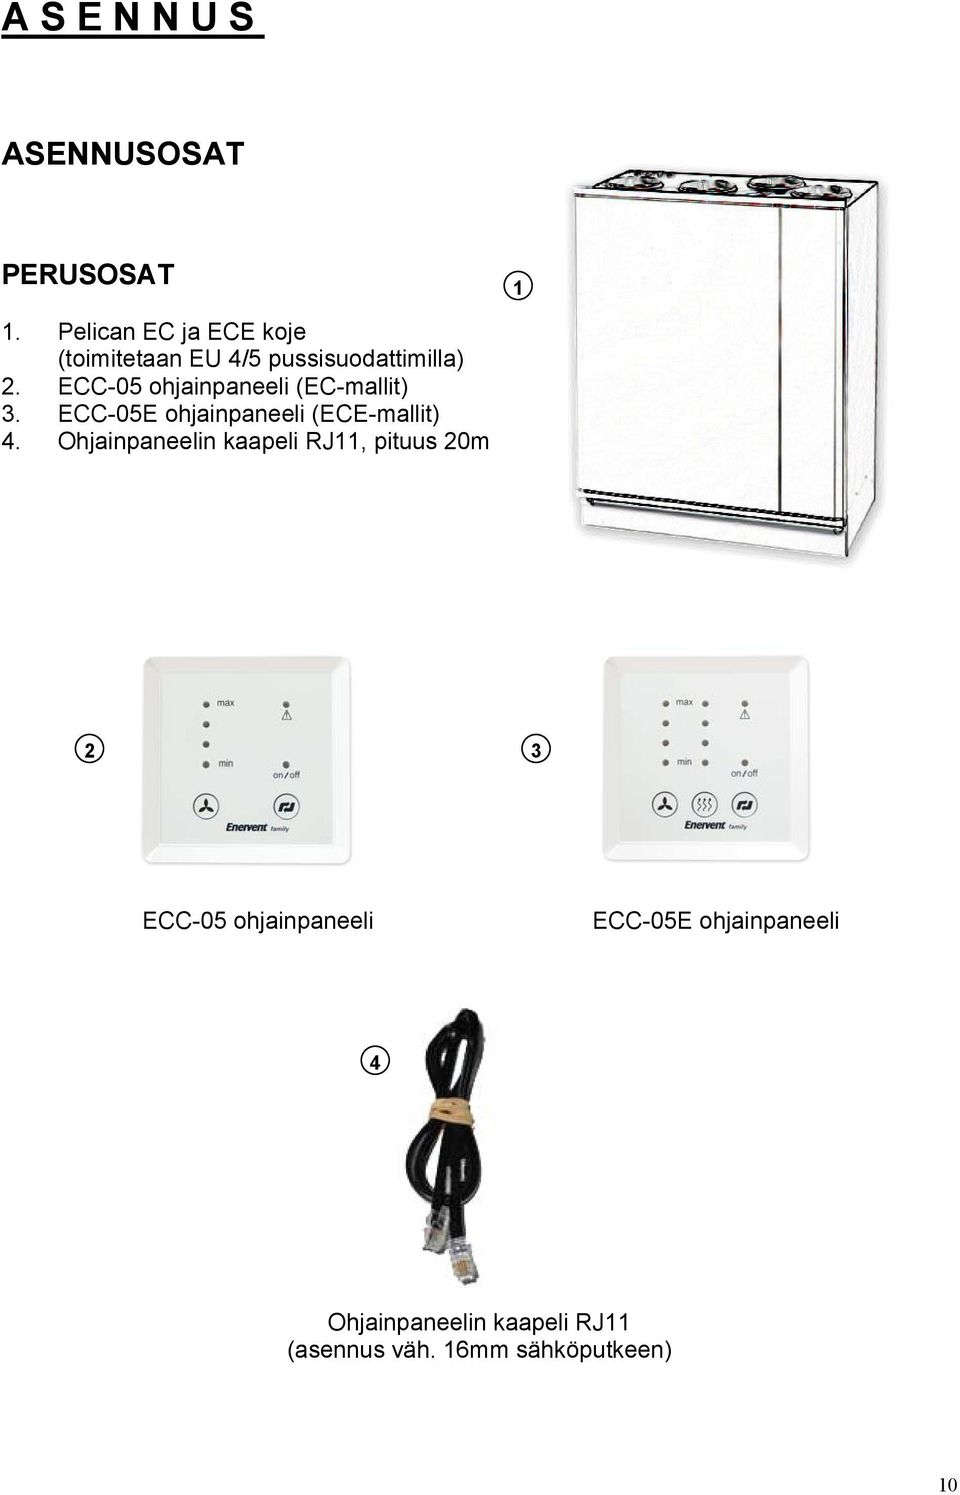 ECC-05 ohjainpaneeli (EC-mallit) 3. ECC-05E ohjainpaneeli (ECE-mallit) 4.